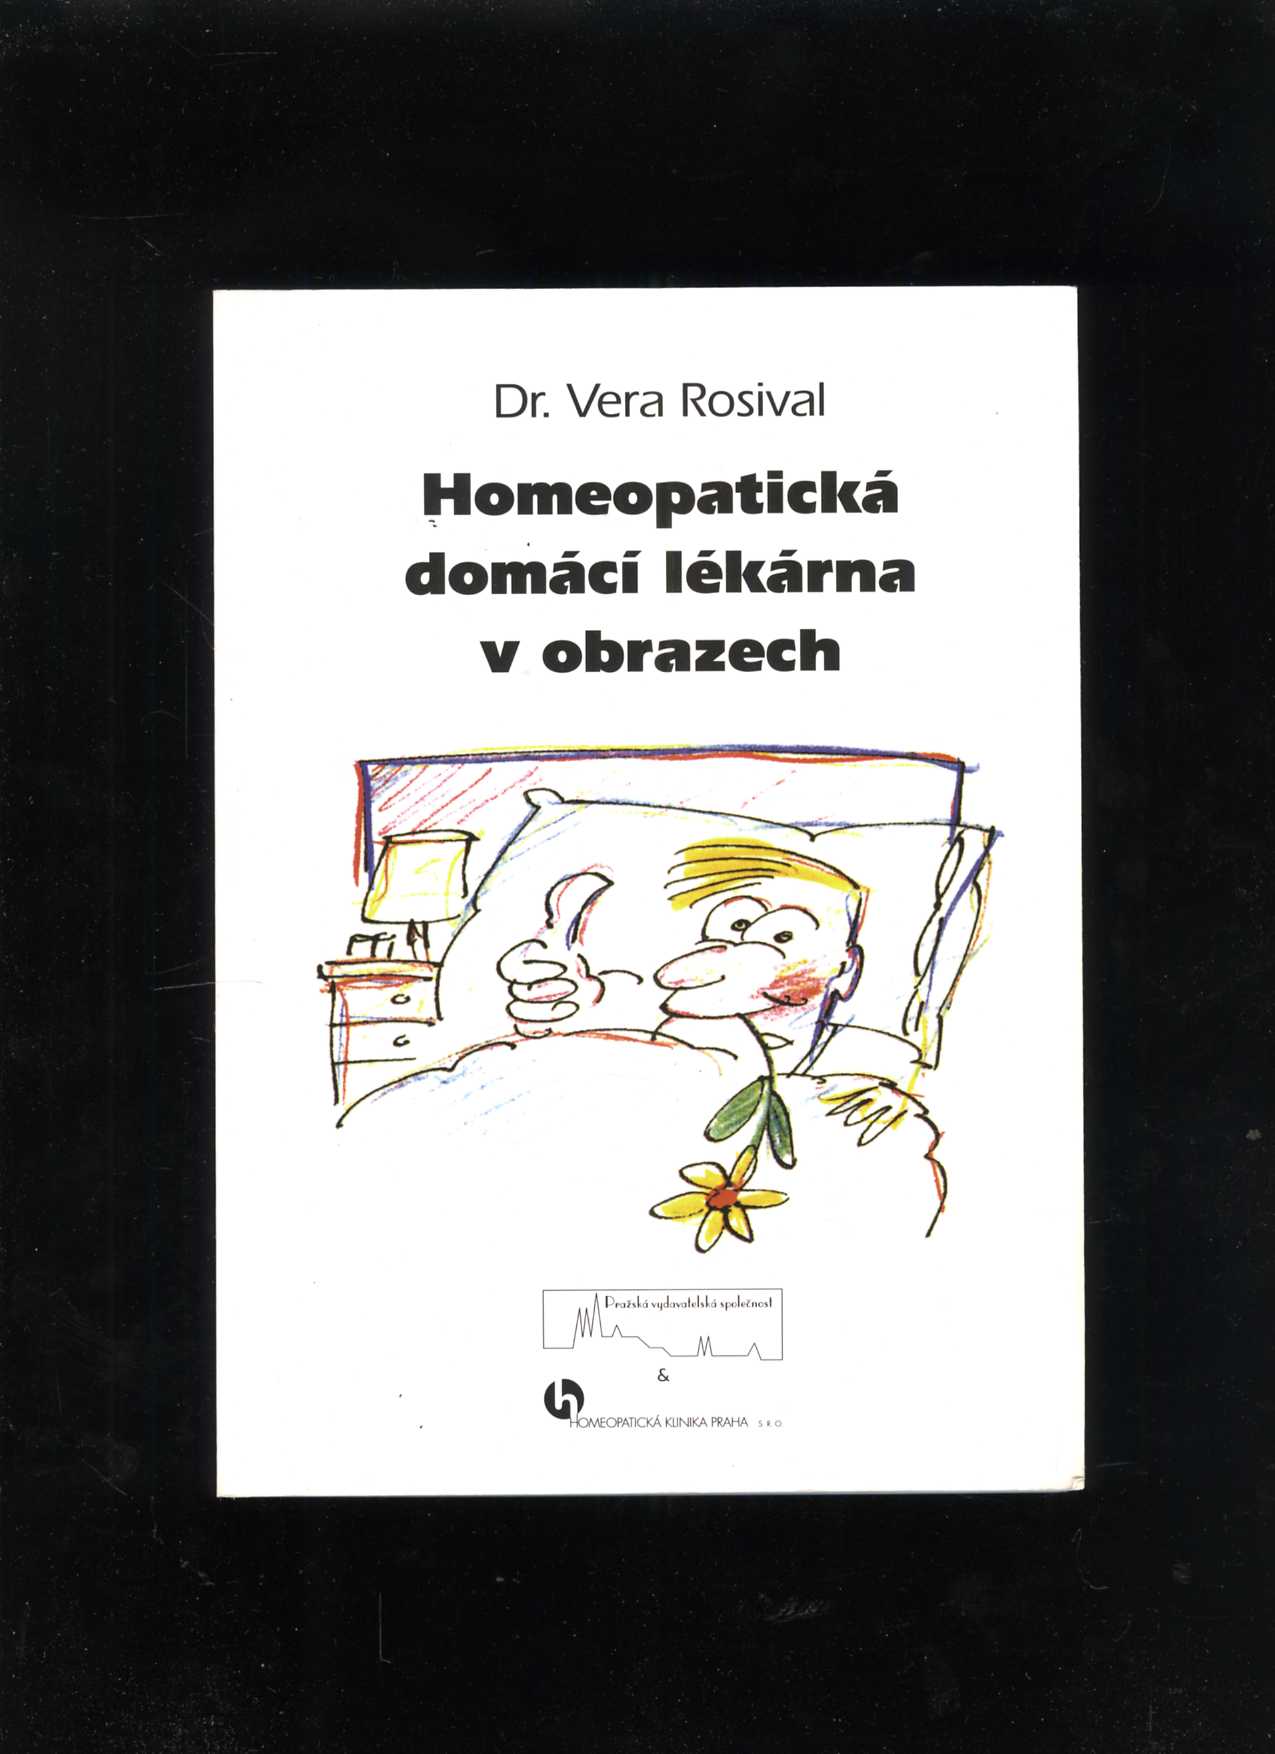 Homeopatická domácí lékárna v obrazech (Vera Rosival)